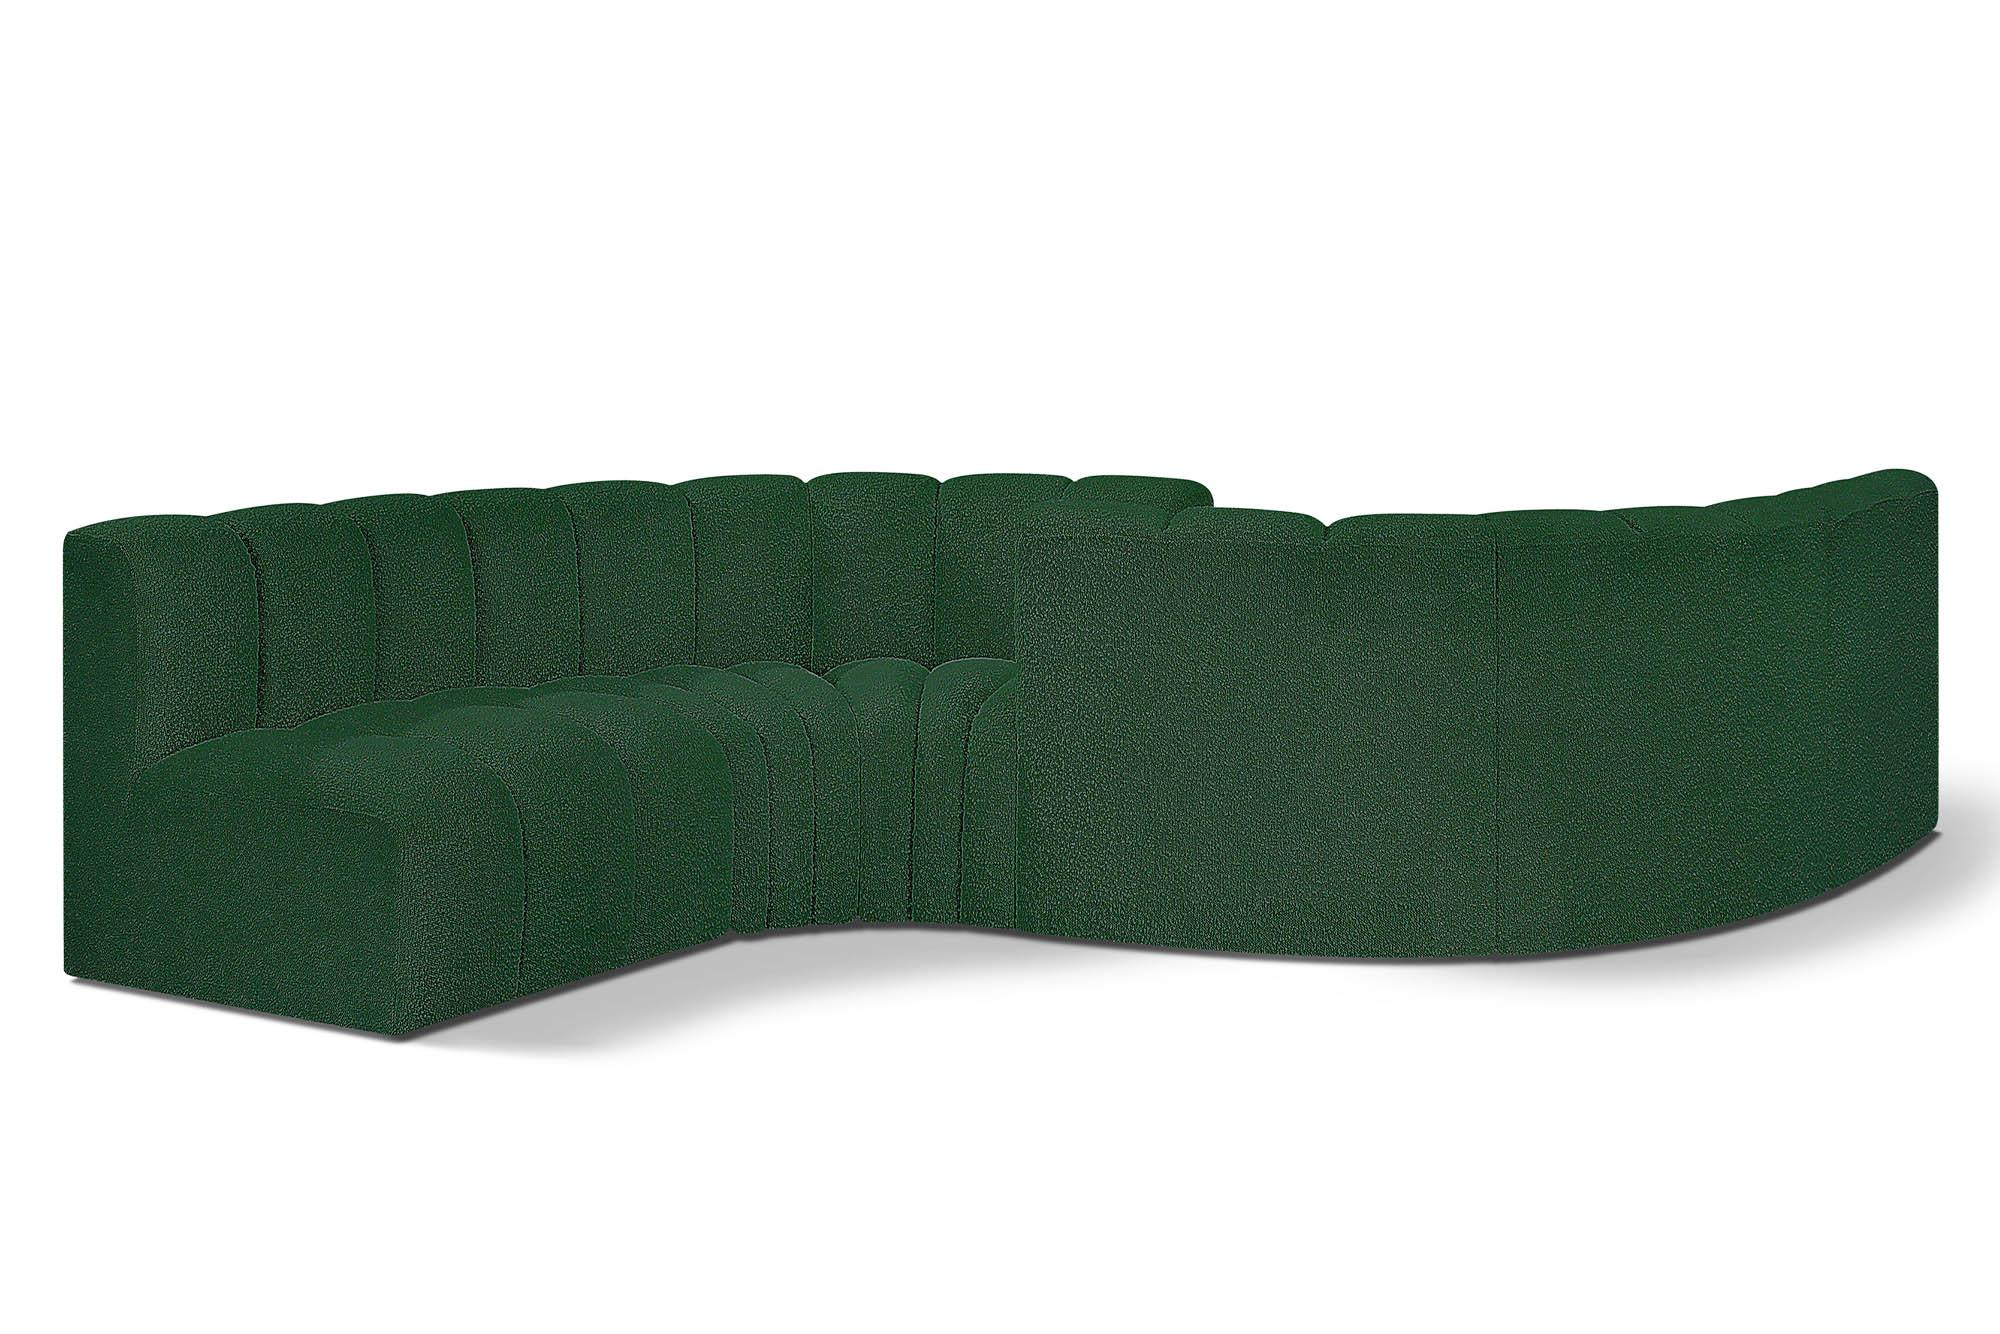 Contemporary, Modern Modular Sectional Sofa ARC 102Green-S6D 102Green-S6D in Green 